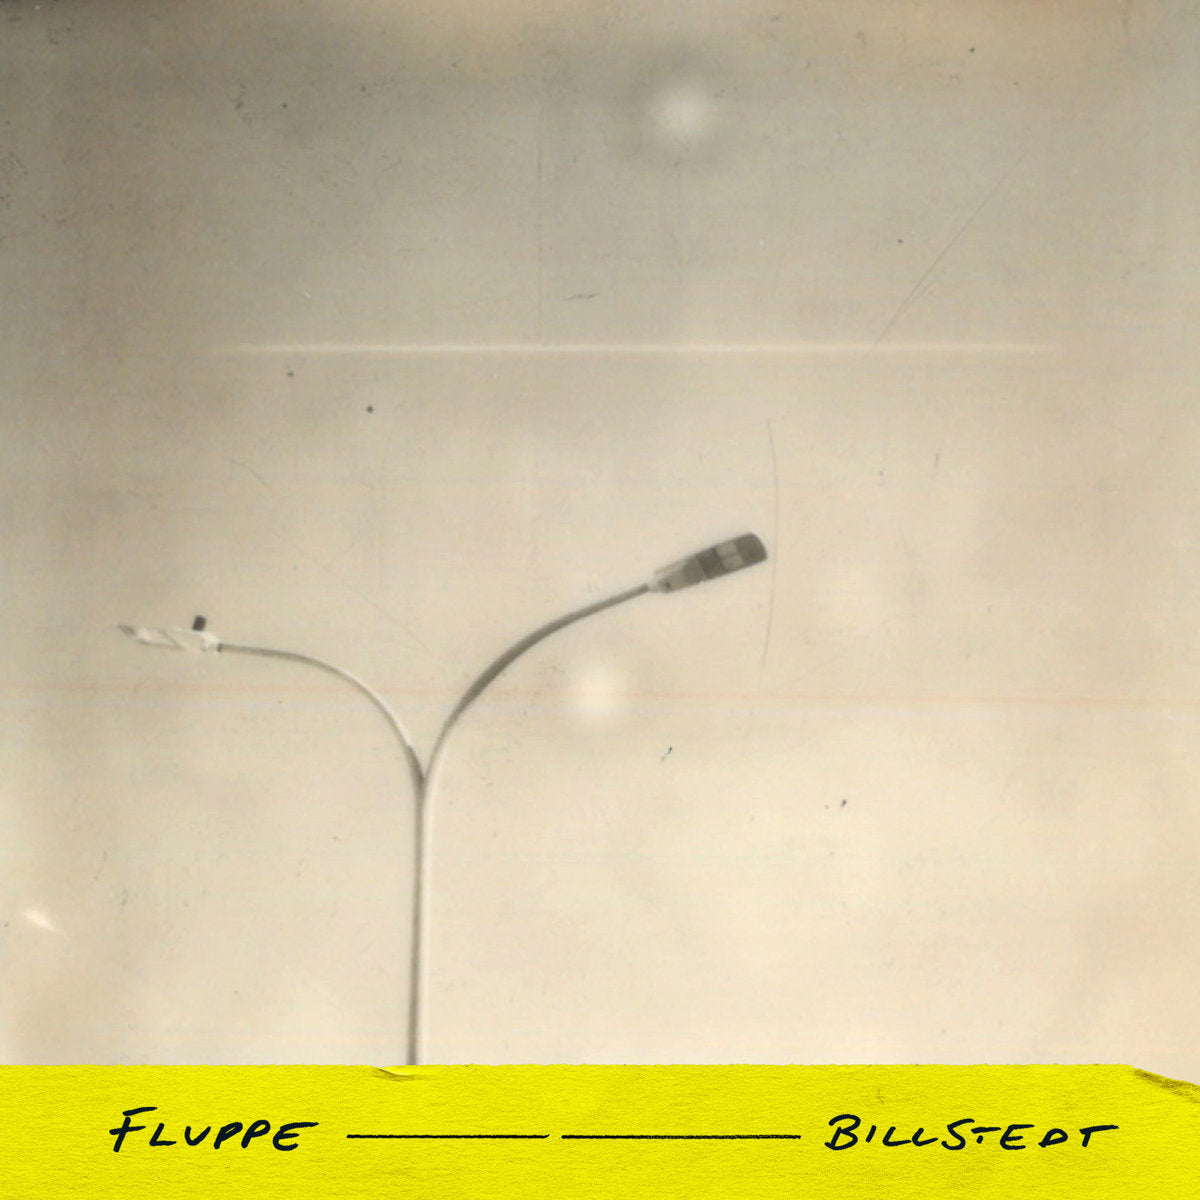 fluppe - Billstedt